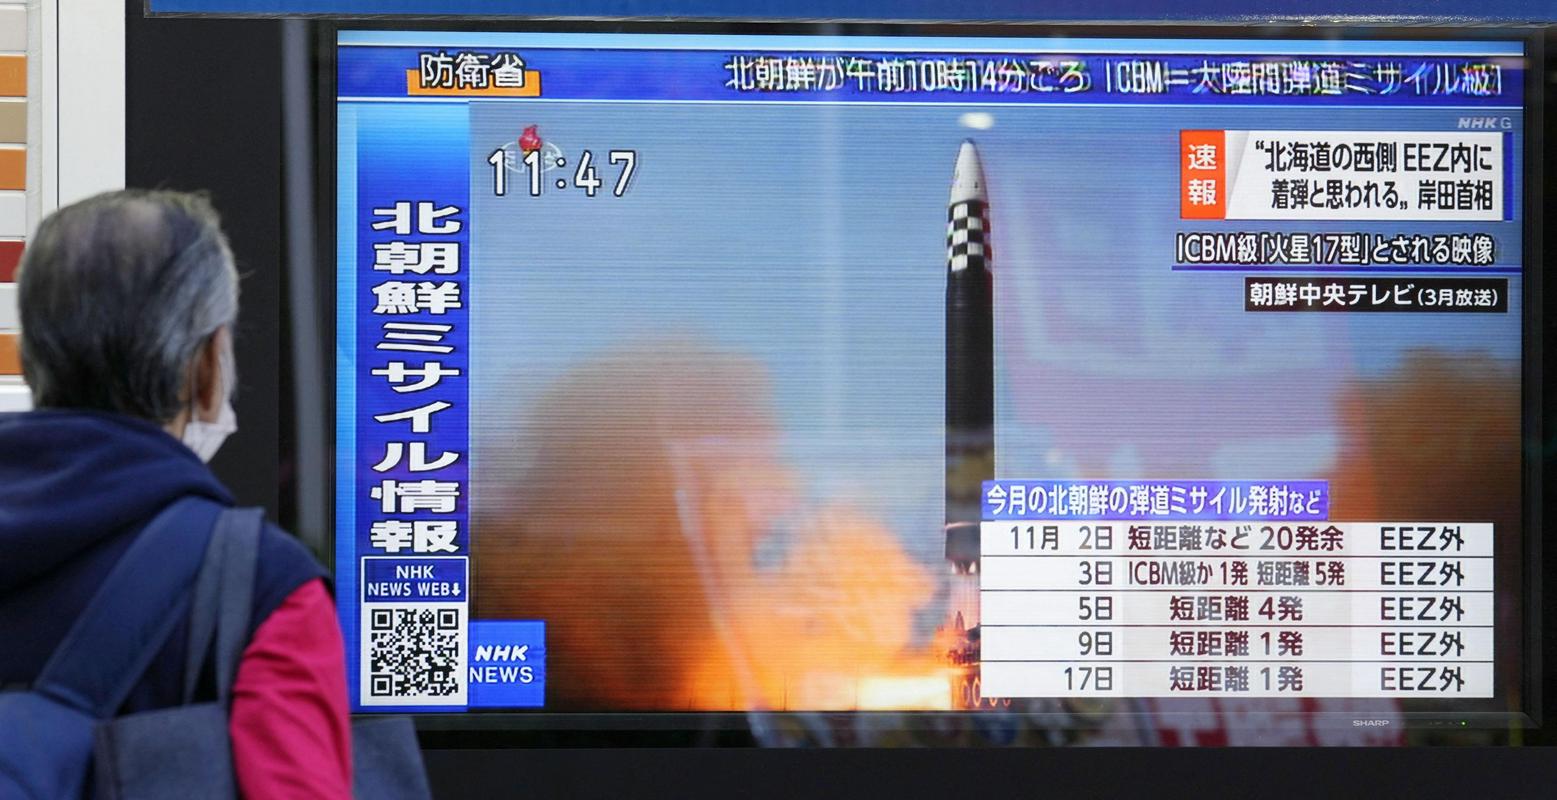 Japonci opazujejo poročila o izstrelitvi rakete. Foto: Reuters